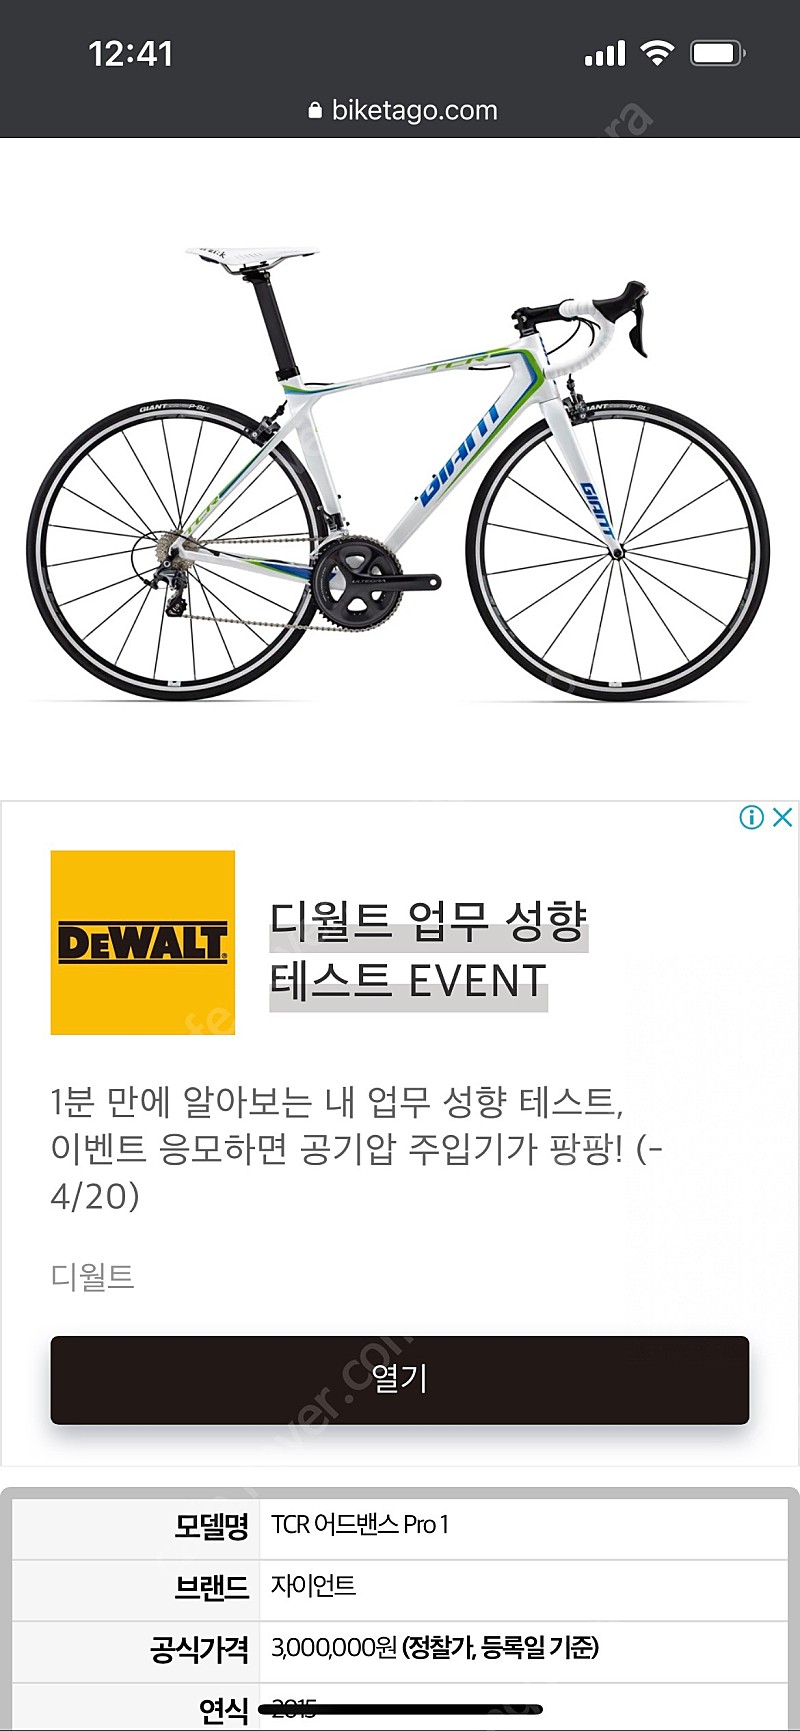 서울) 2015자이언트 tcr어드밴스1 로드자전거